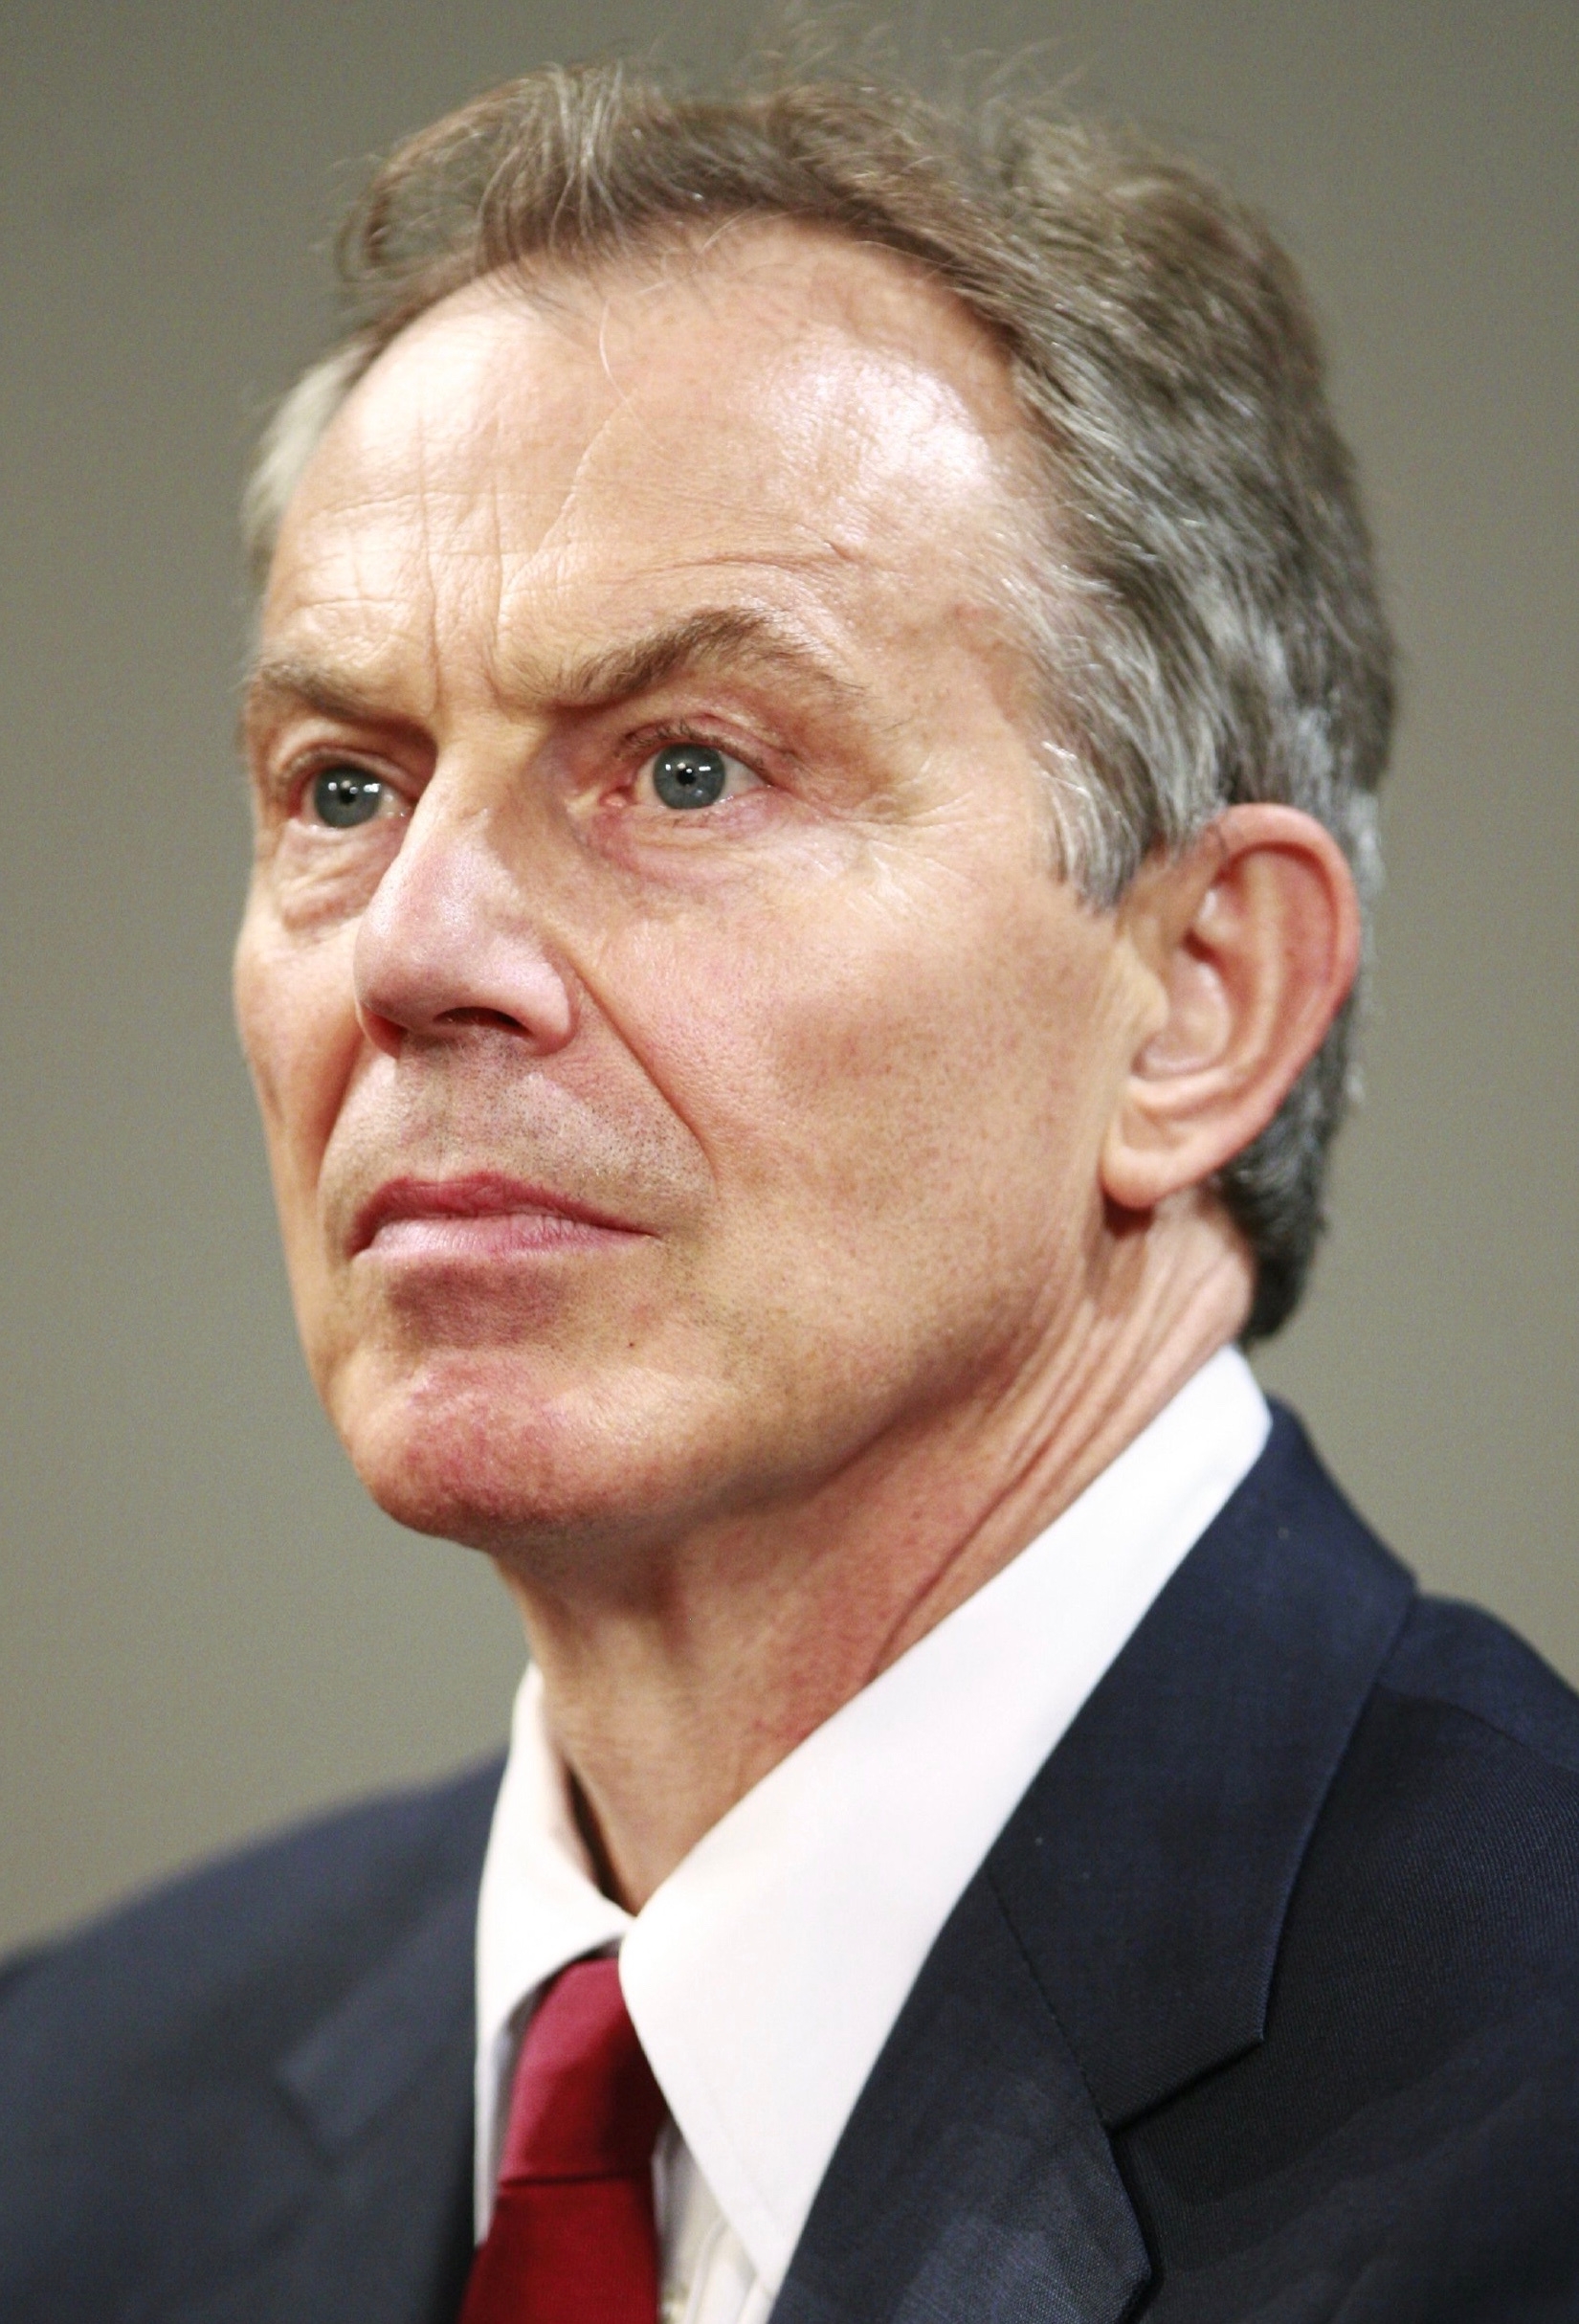 auteur Tony Blair de la citation Le pouvoir sans principe est stérile, mais le principe sans pouvoir est futile. Il s'agit d'un parti de gouvernement, et je le dirigerai en tant que parti de gouvernement.